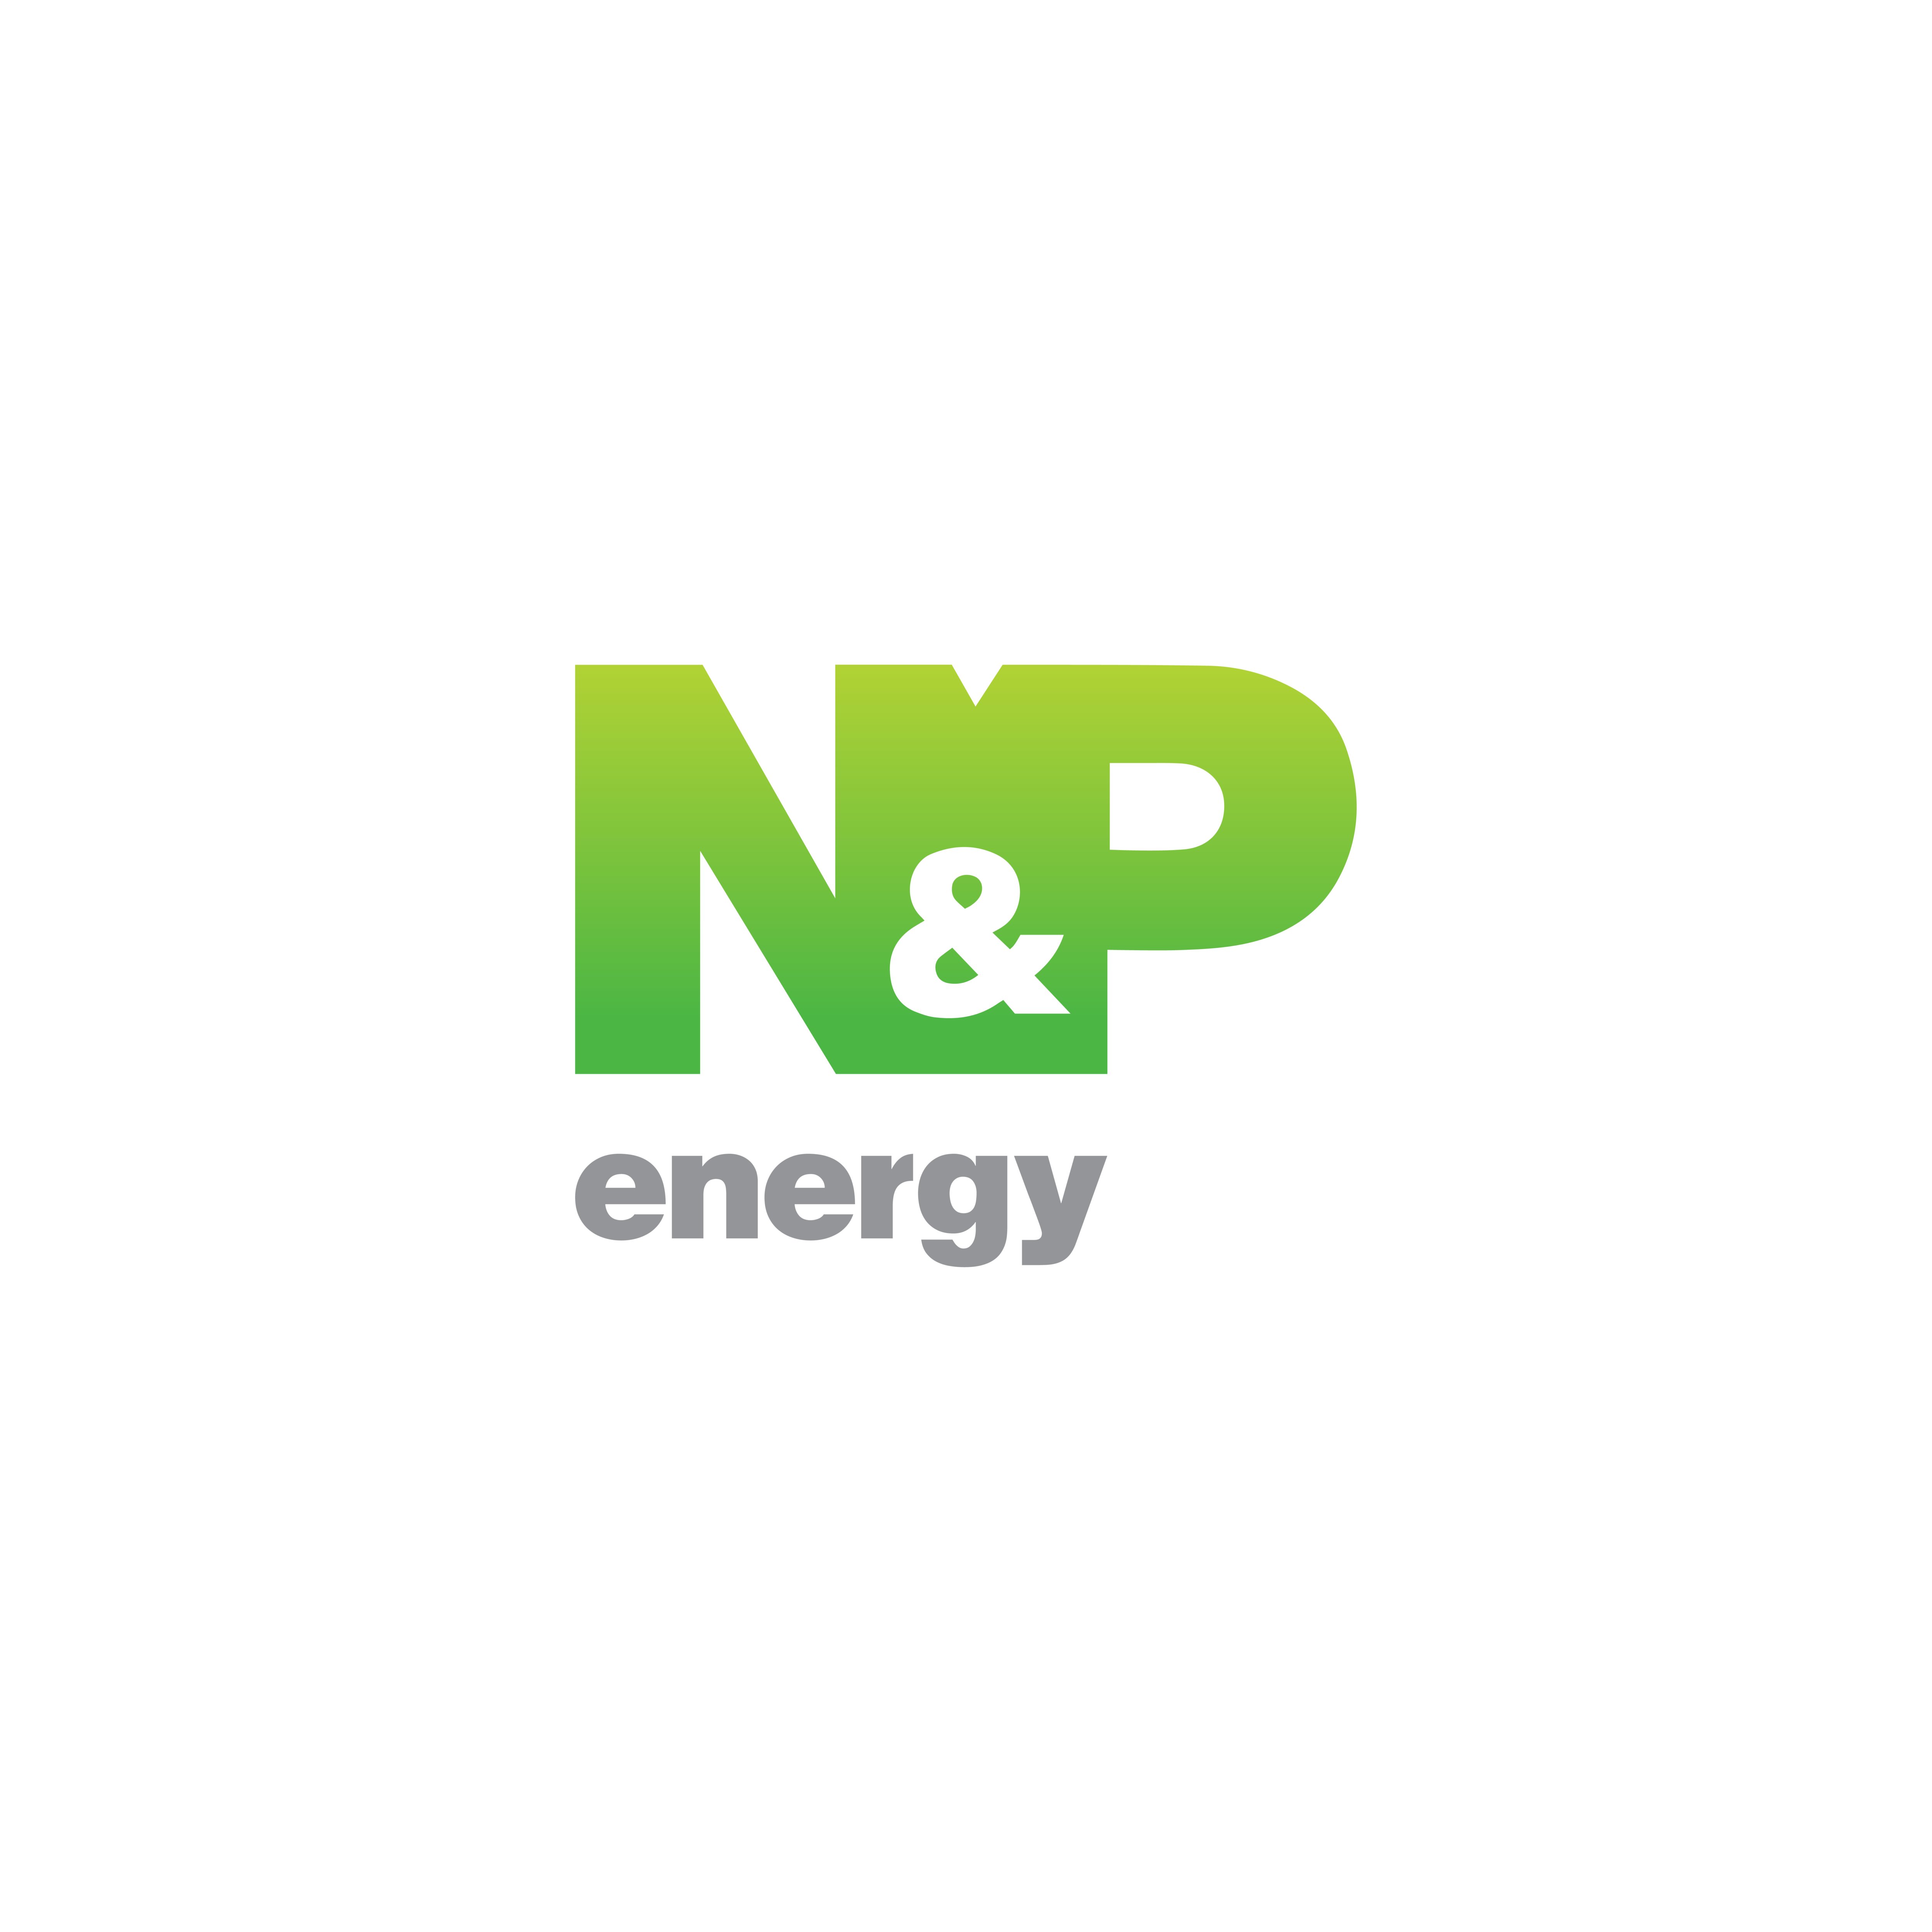 N&P energy logo -01